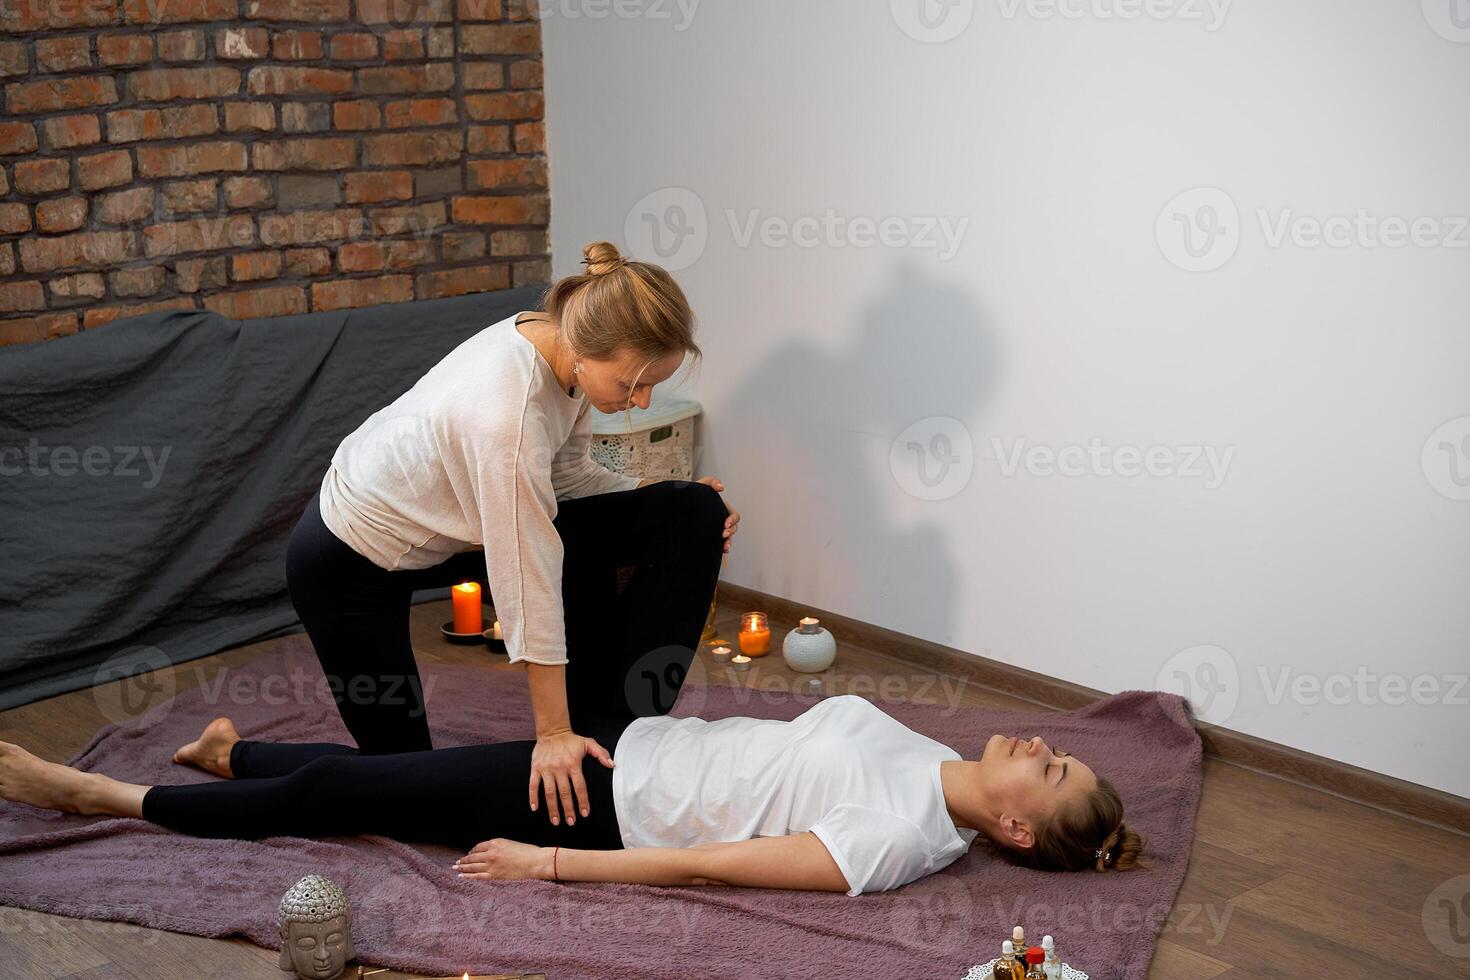 rilassare e godere nel terme salone, ottenere tailandese massaggio di professionale massaggiatore. foto